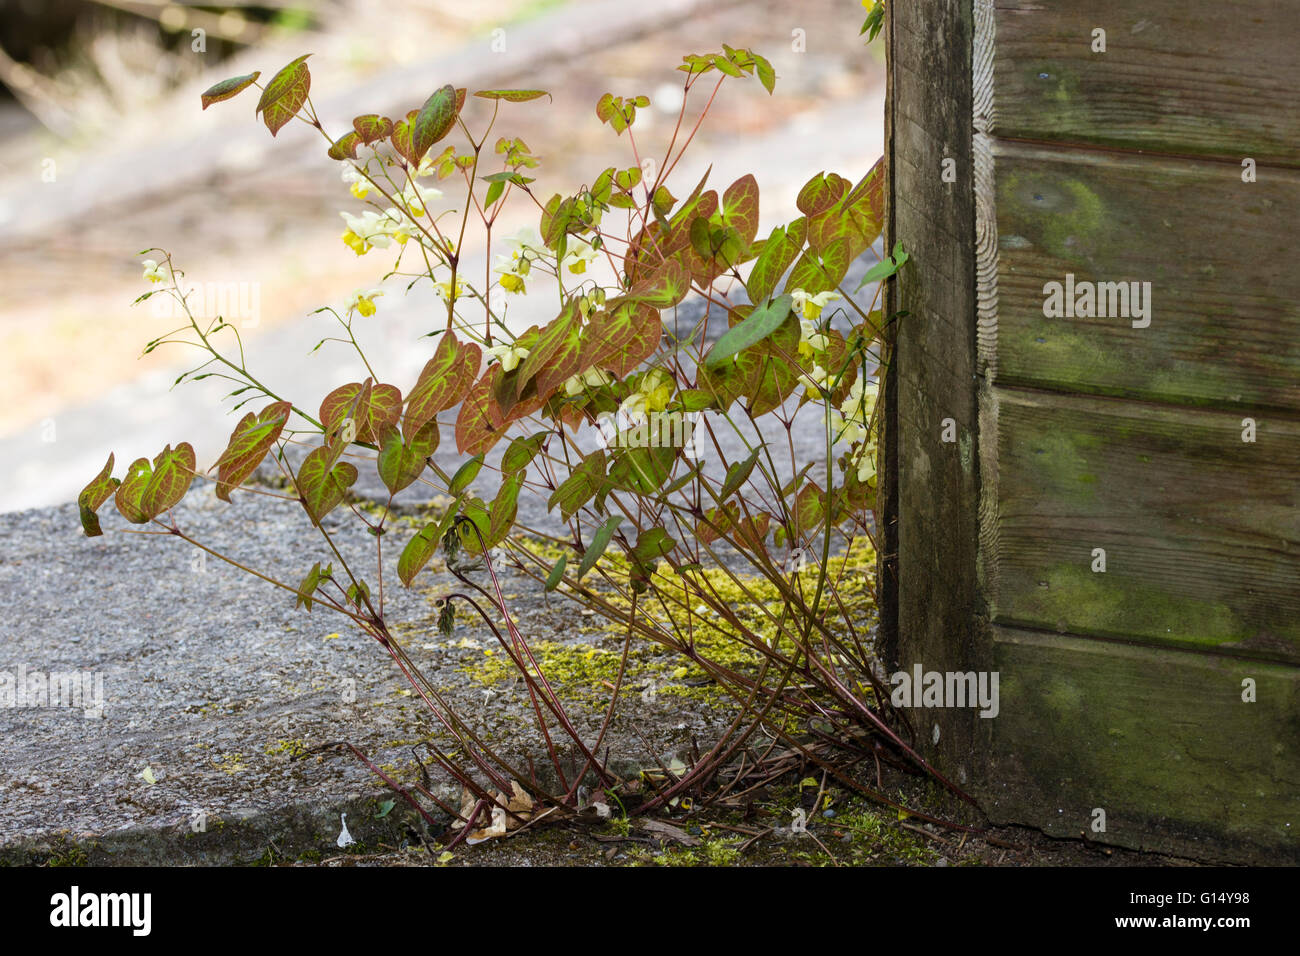 Rosso contrassegnato con foglie e fiori di colore giallo della hybrid barrenwort, Epimedium x versicolor 'Sulphureum' Foto Stock